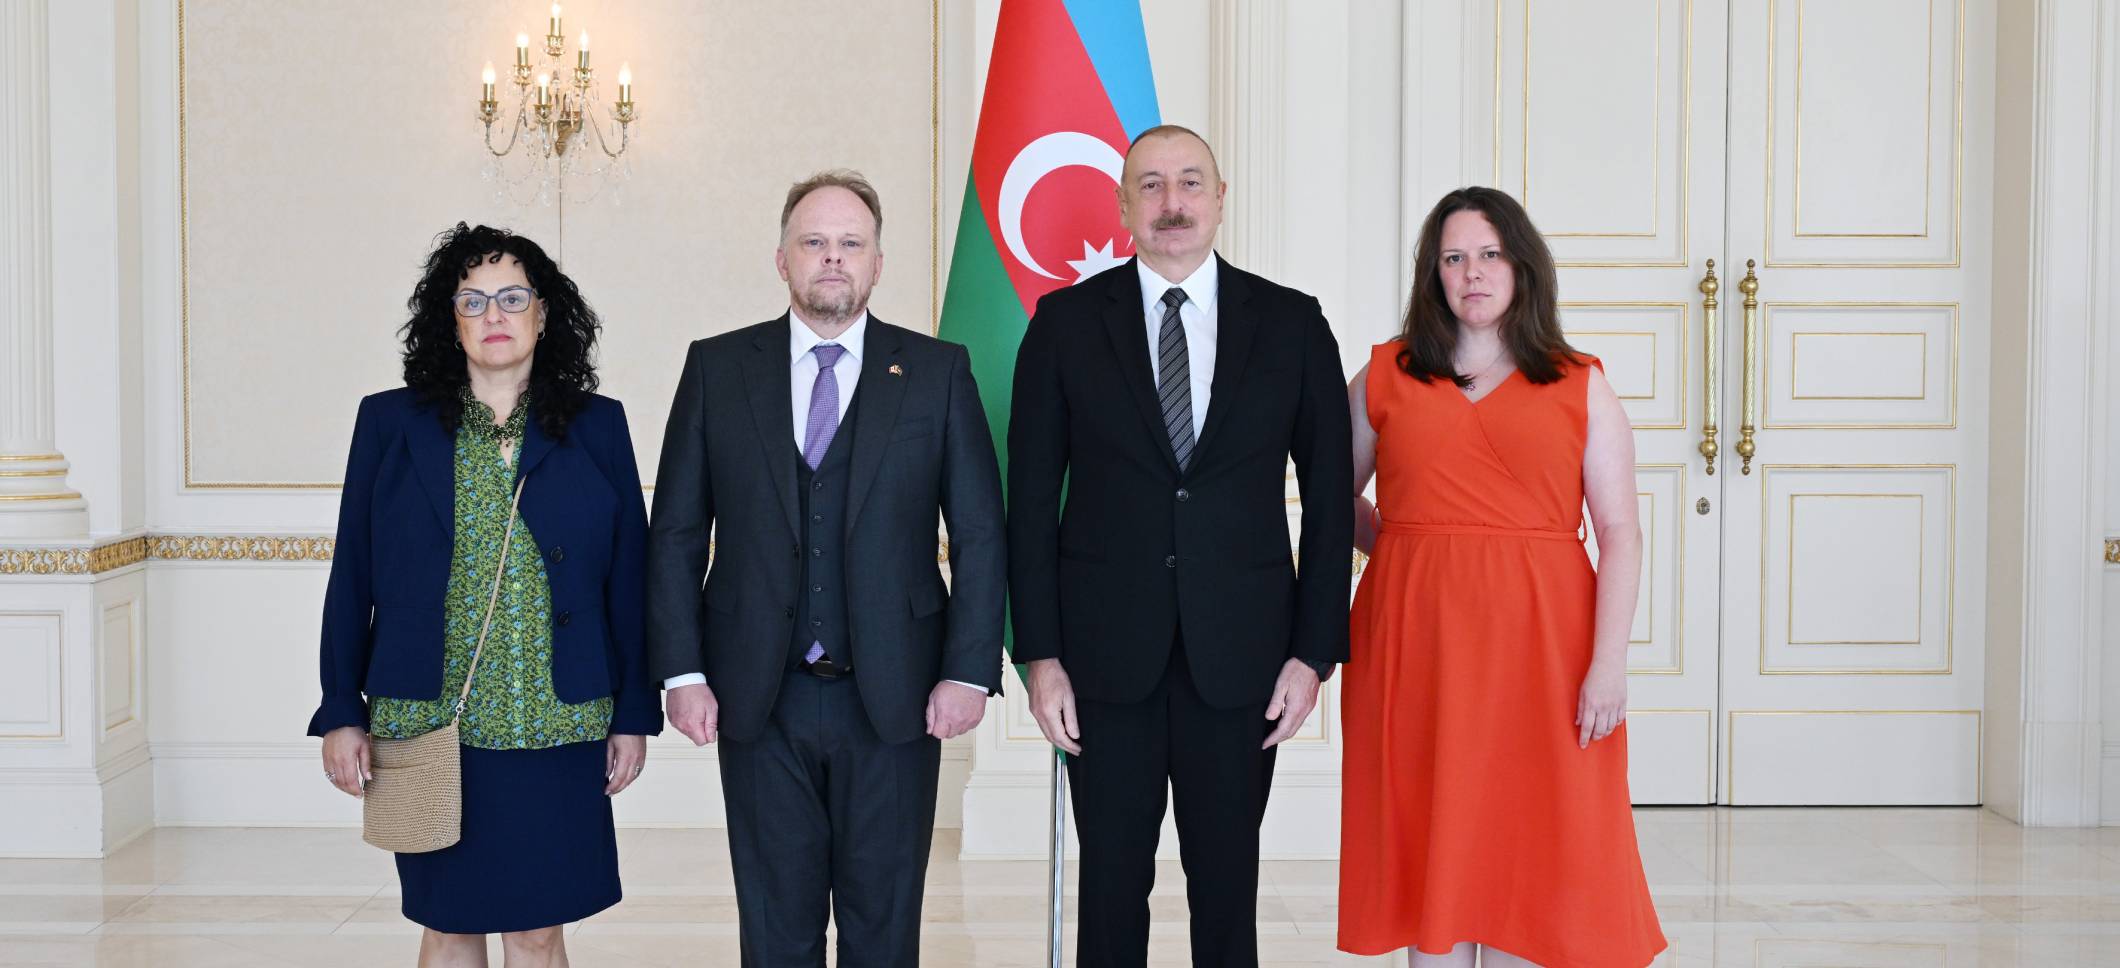 Ильхам Алиев принял верительные грамоты новоназначенного посла Канады в нашей стране